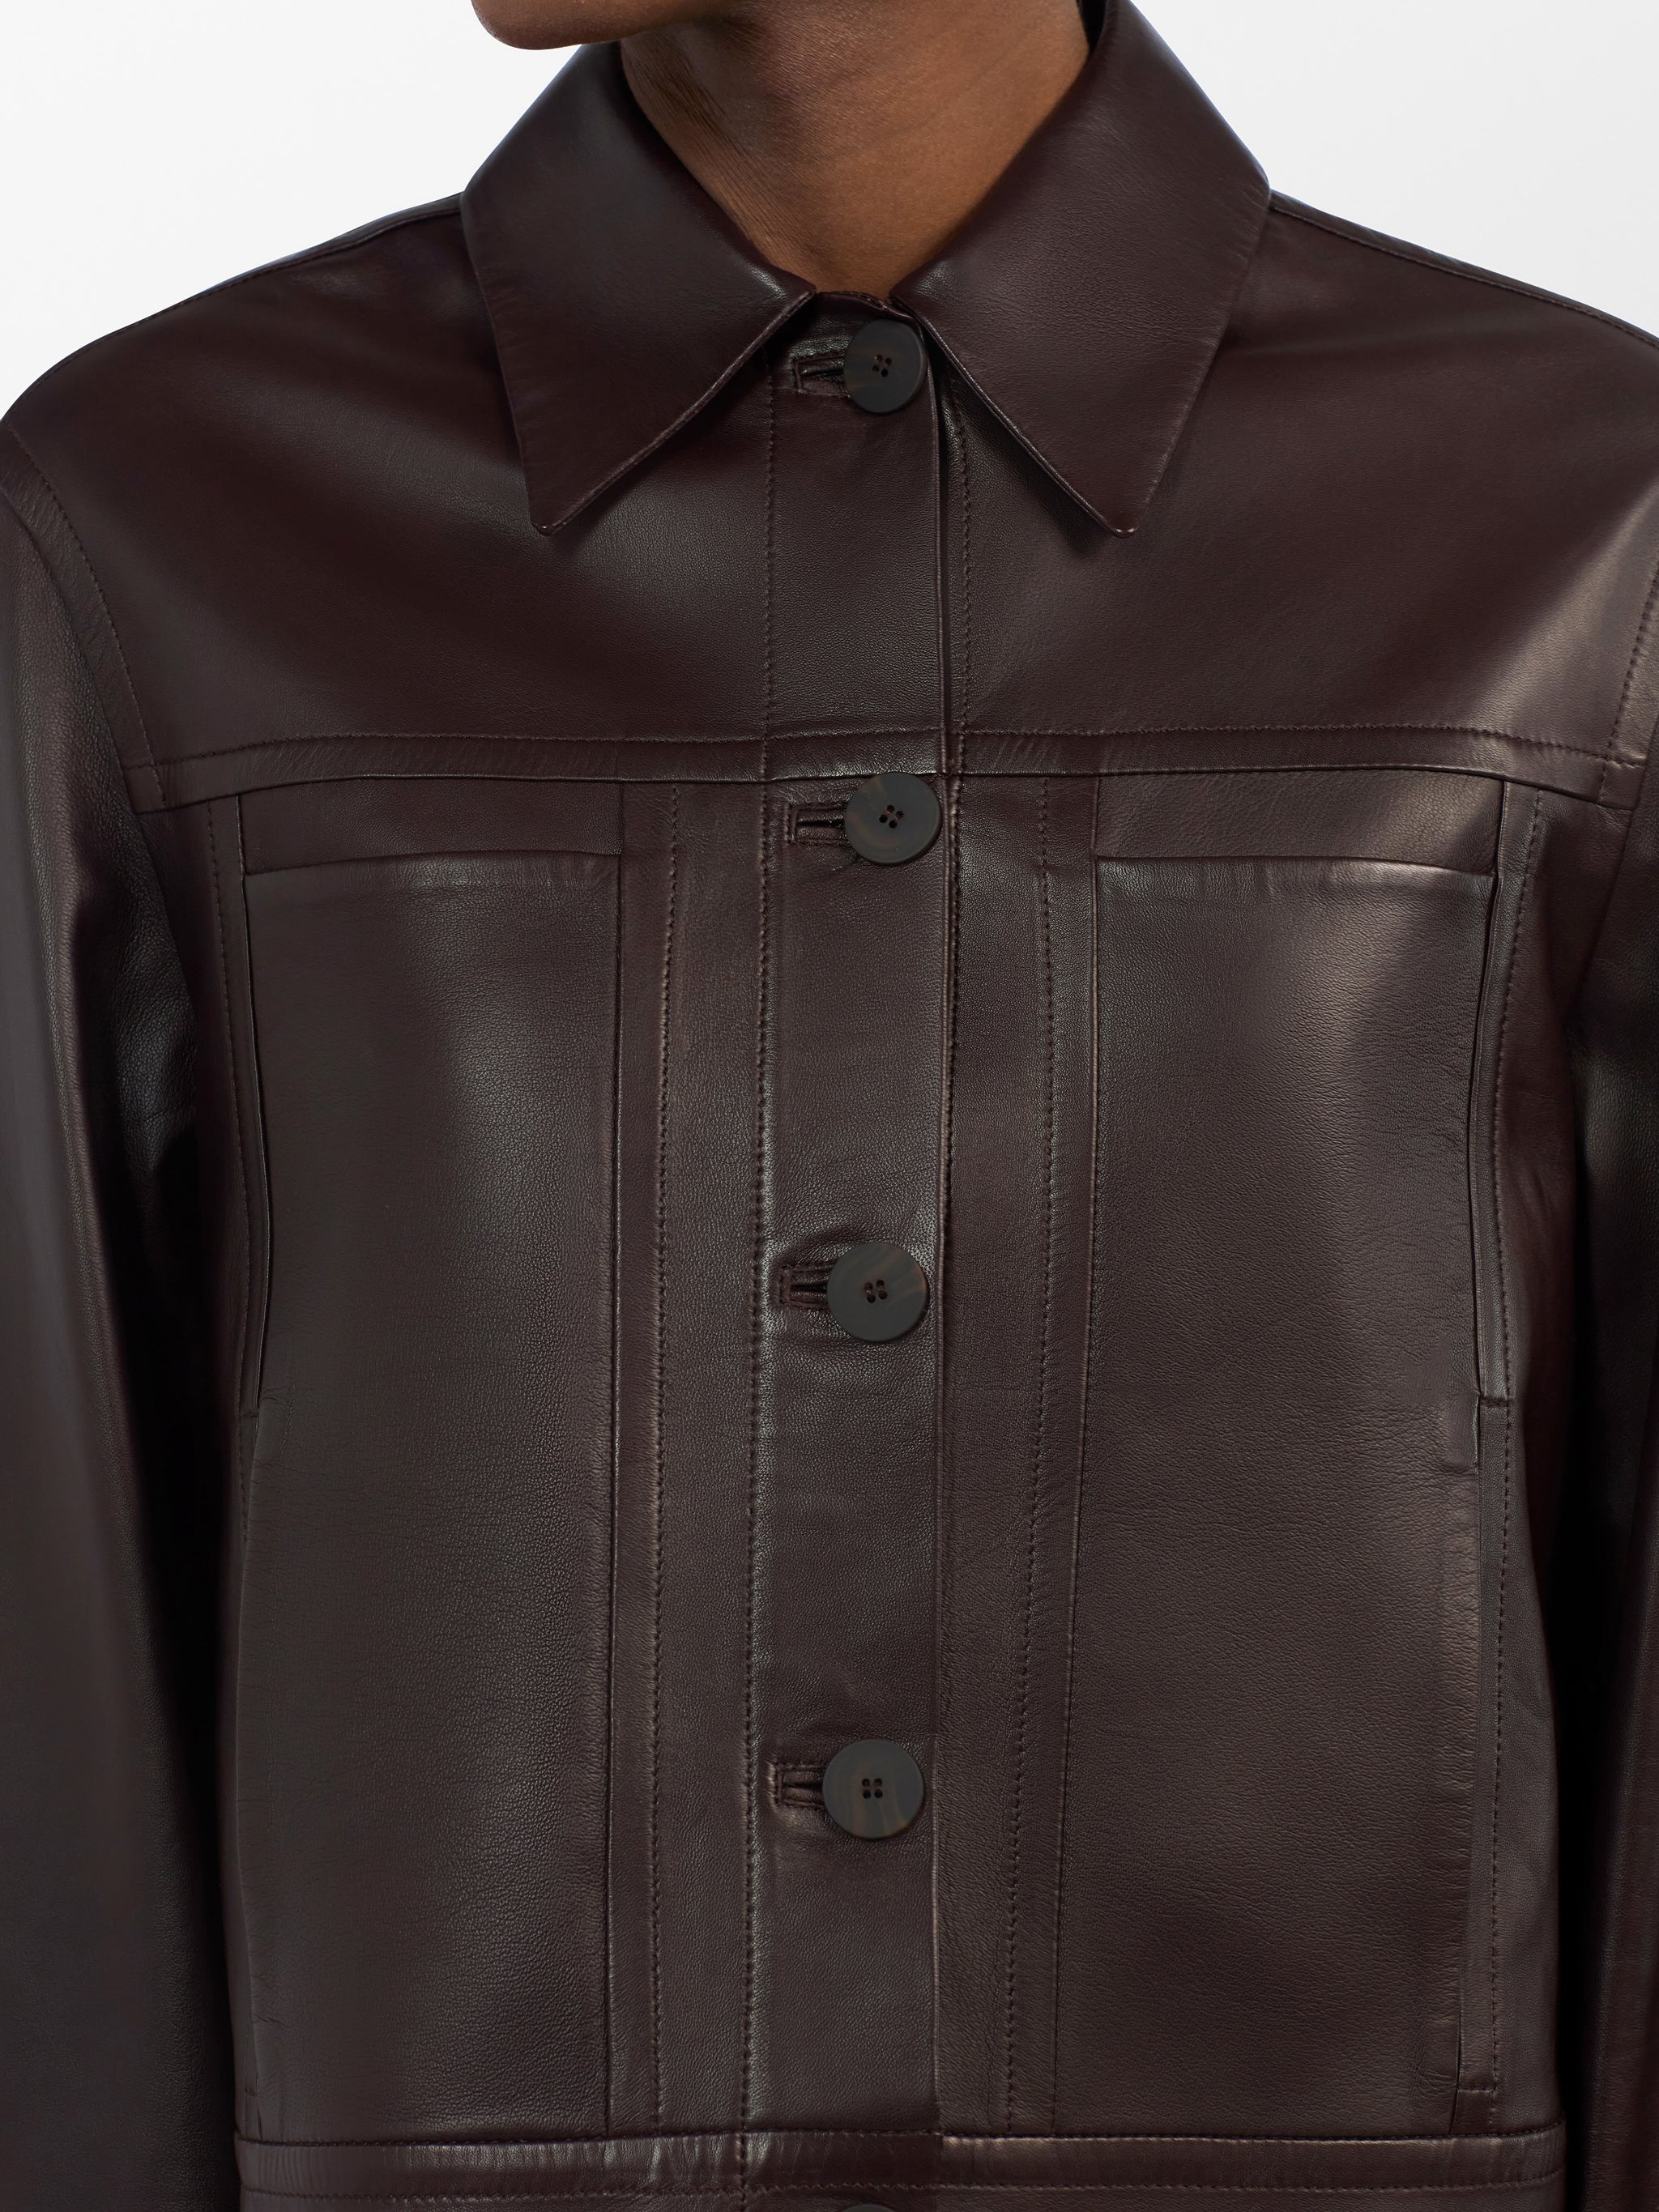 Tahoe Leather Jacket - 6